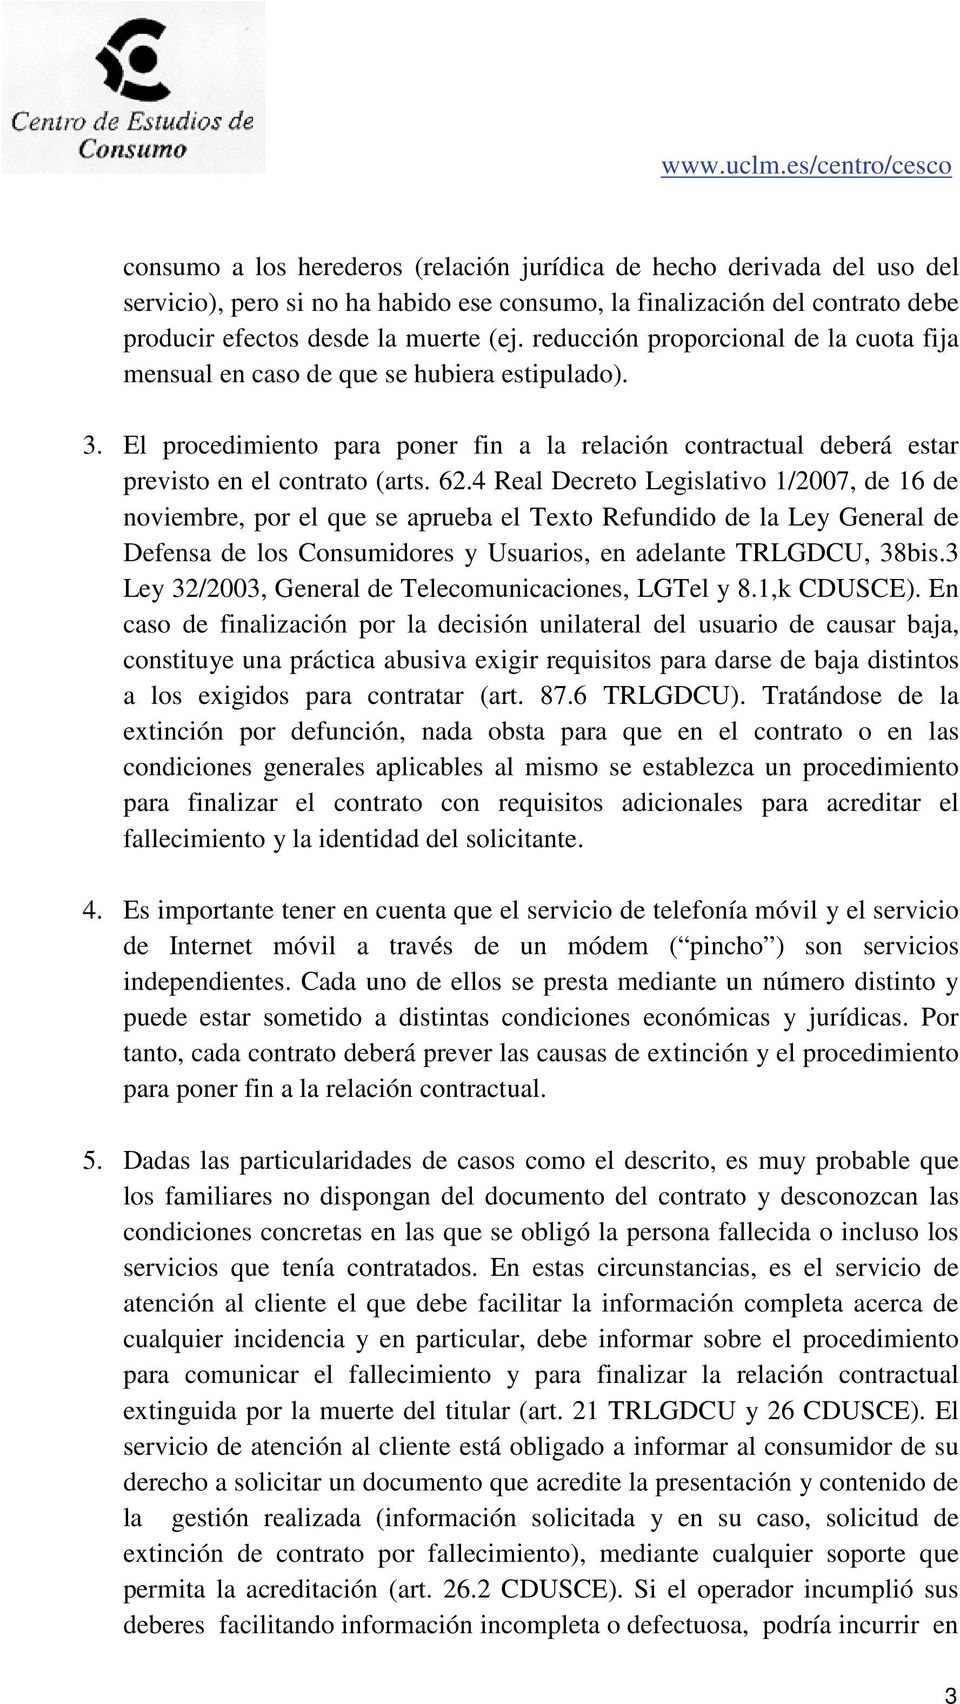 4 Real Decreto Legislativo 1/2007, de 16 de noviembre, por el que se aprueba el Texto Refundido de la Ley General de Defensa de los Consumidores y Usuarios, en adelante TRLGDCU, 38bis.